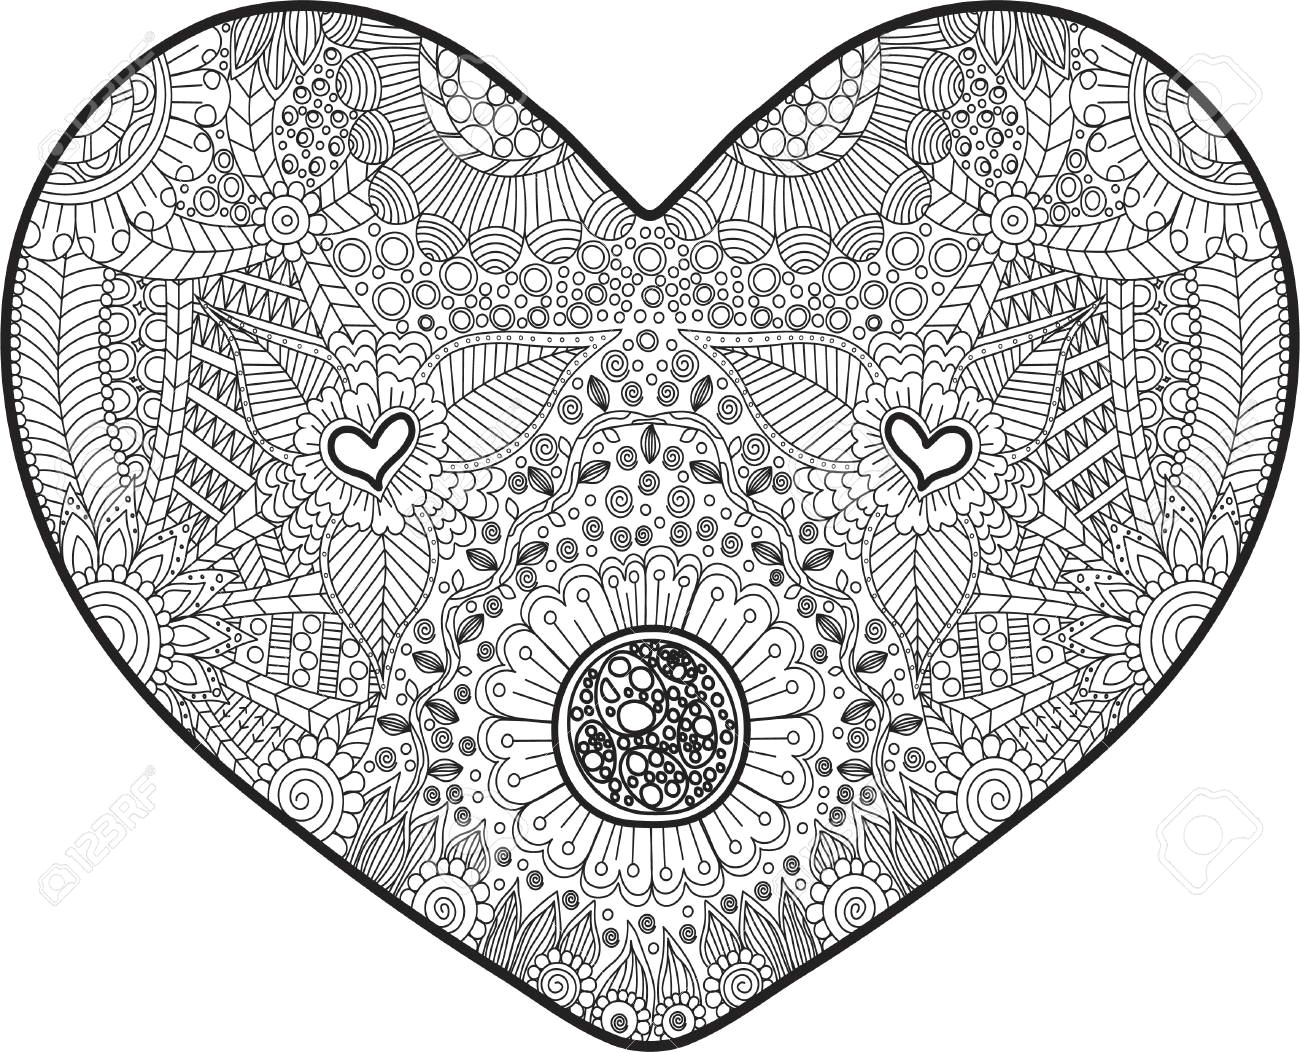 Drawing Of A Detailed Heart Abstraktes Herz Mit Schonem Detail Fur Das Malen Des Antidruckes